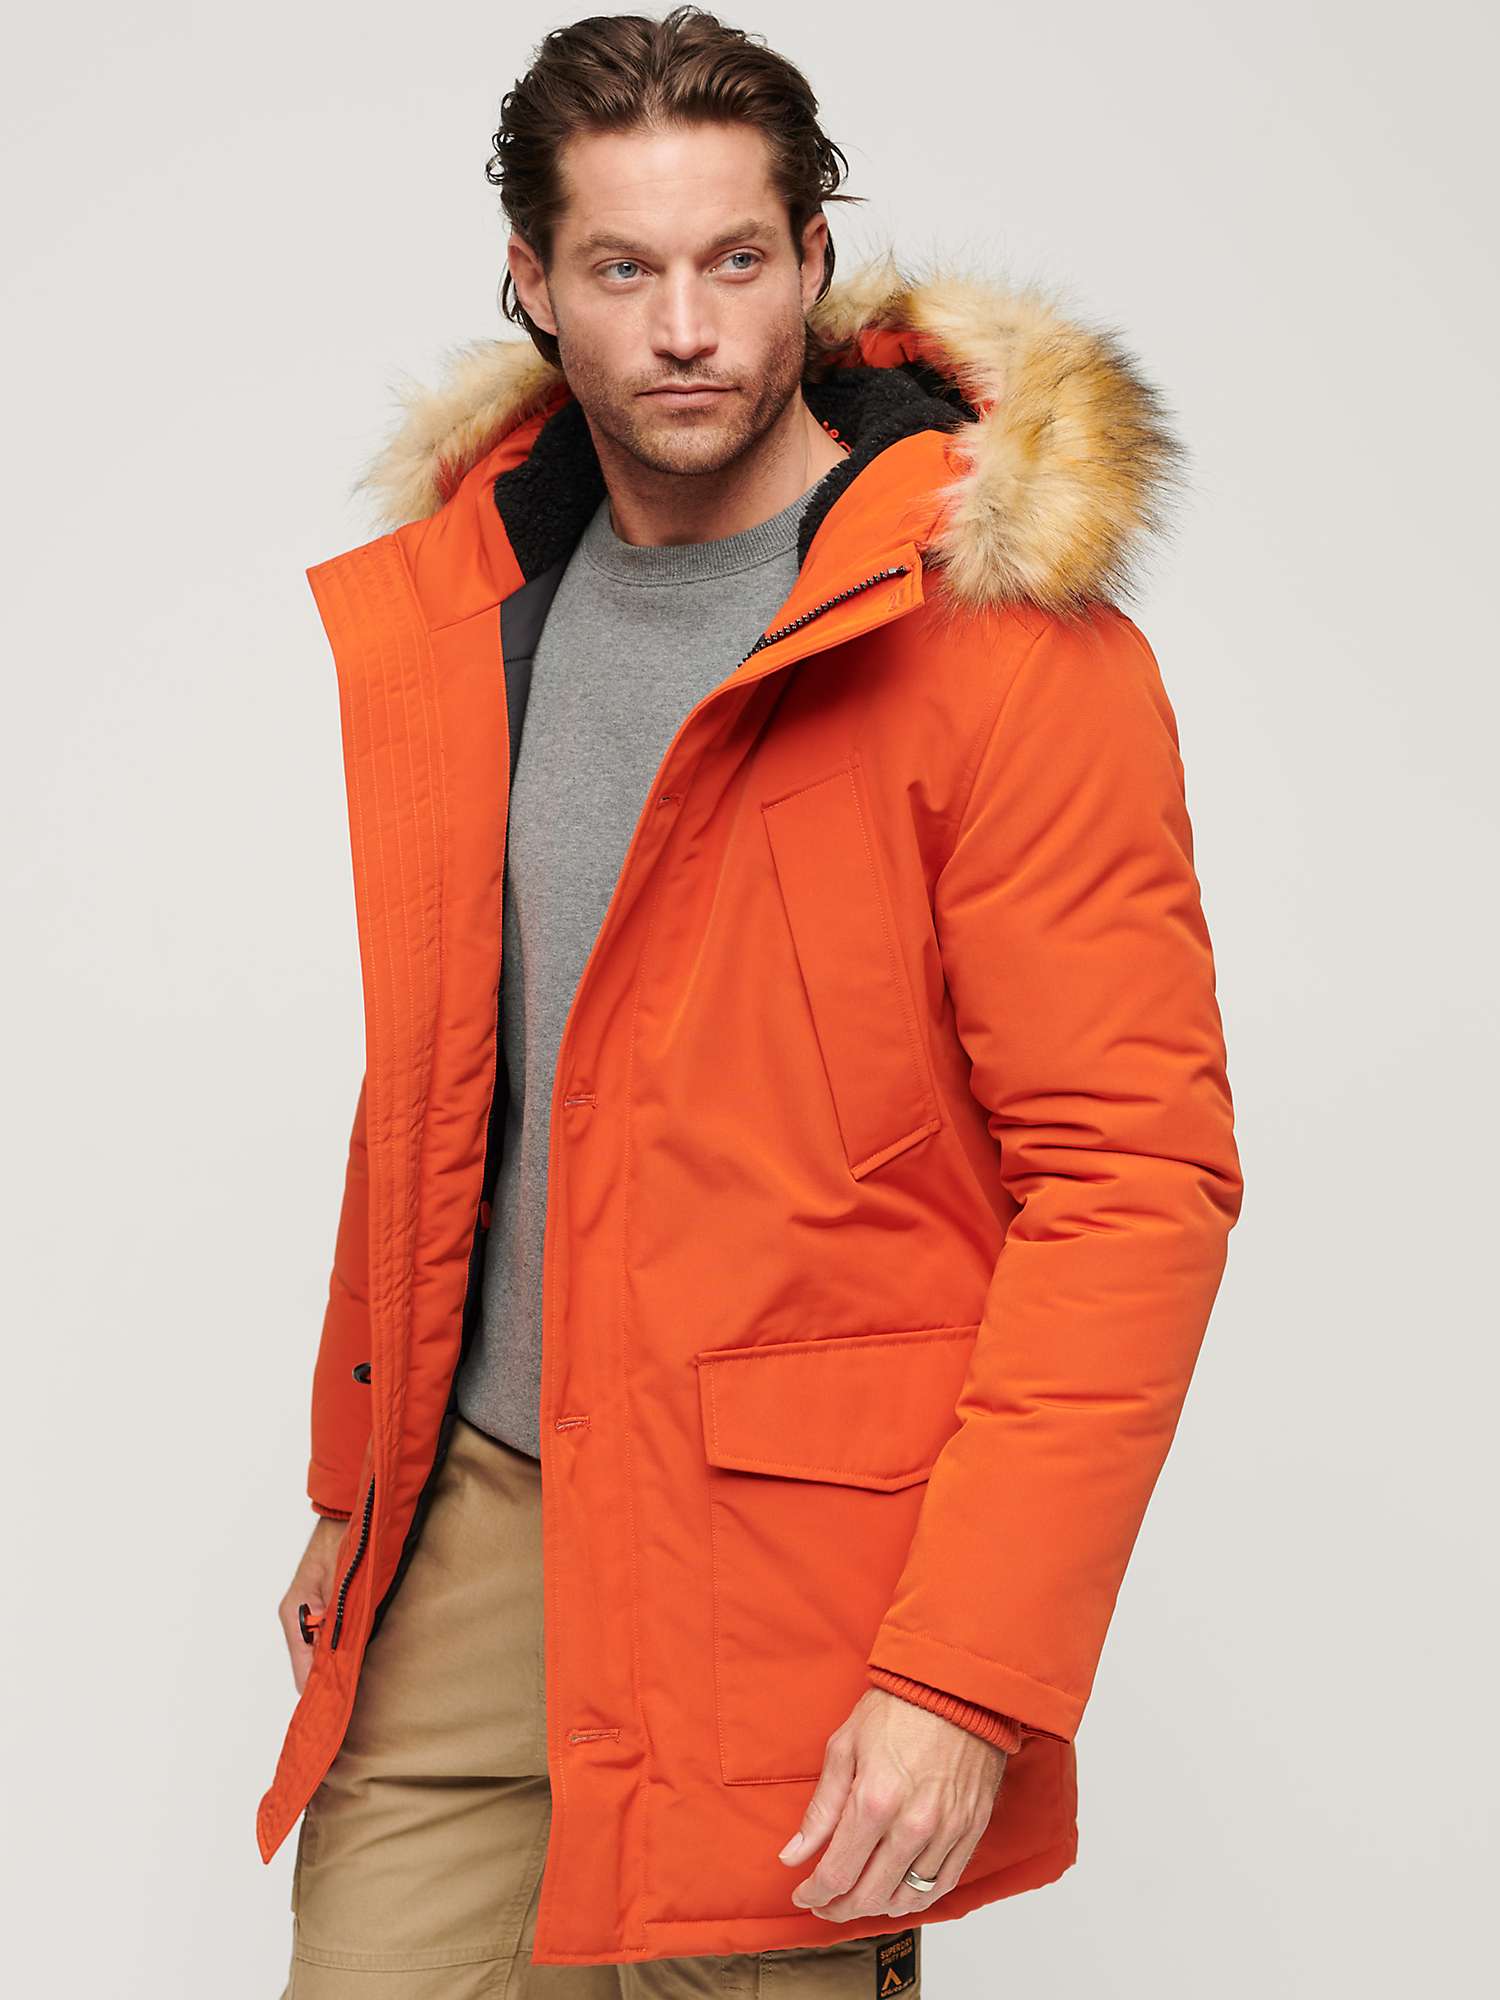 Buy Superdry Everest Faux Fur Hooded Parka Coat Online at johnlewis.com